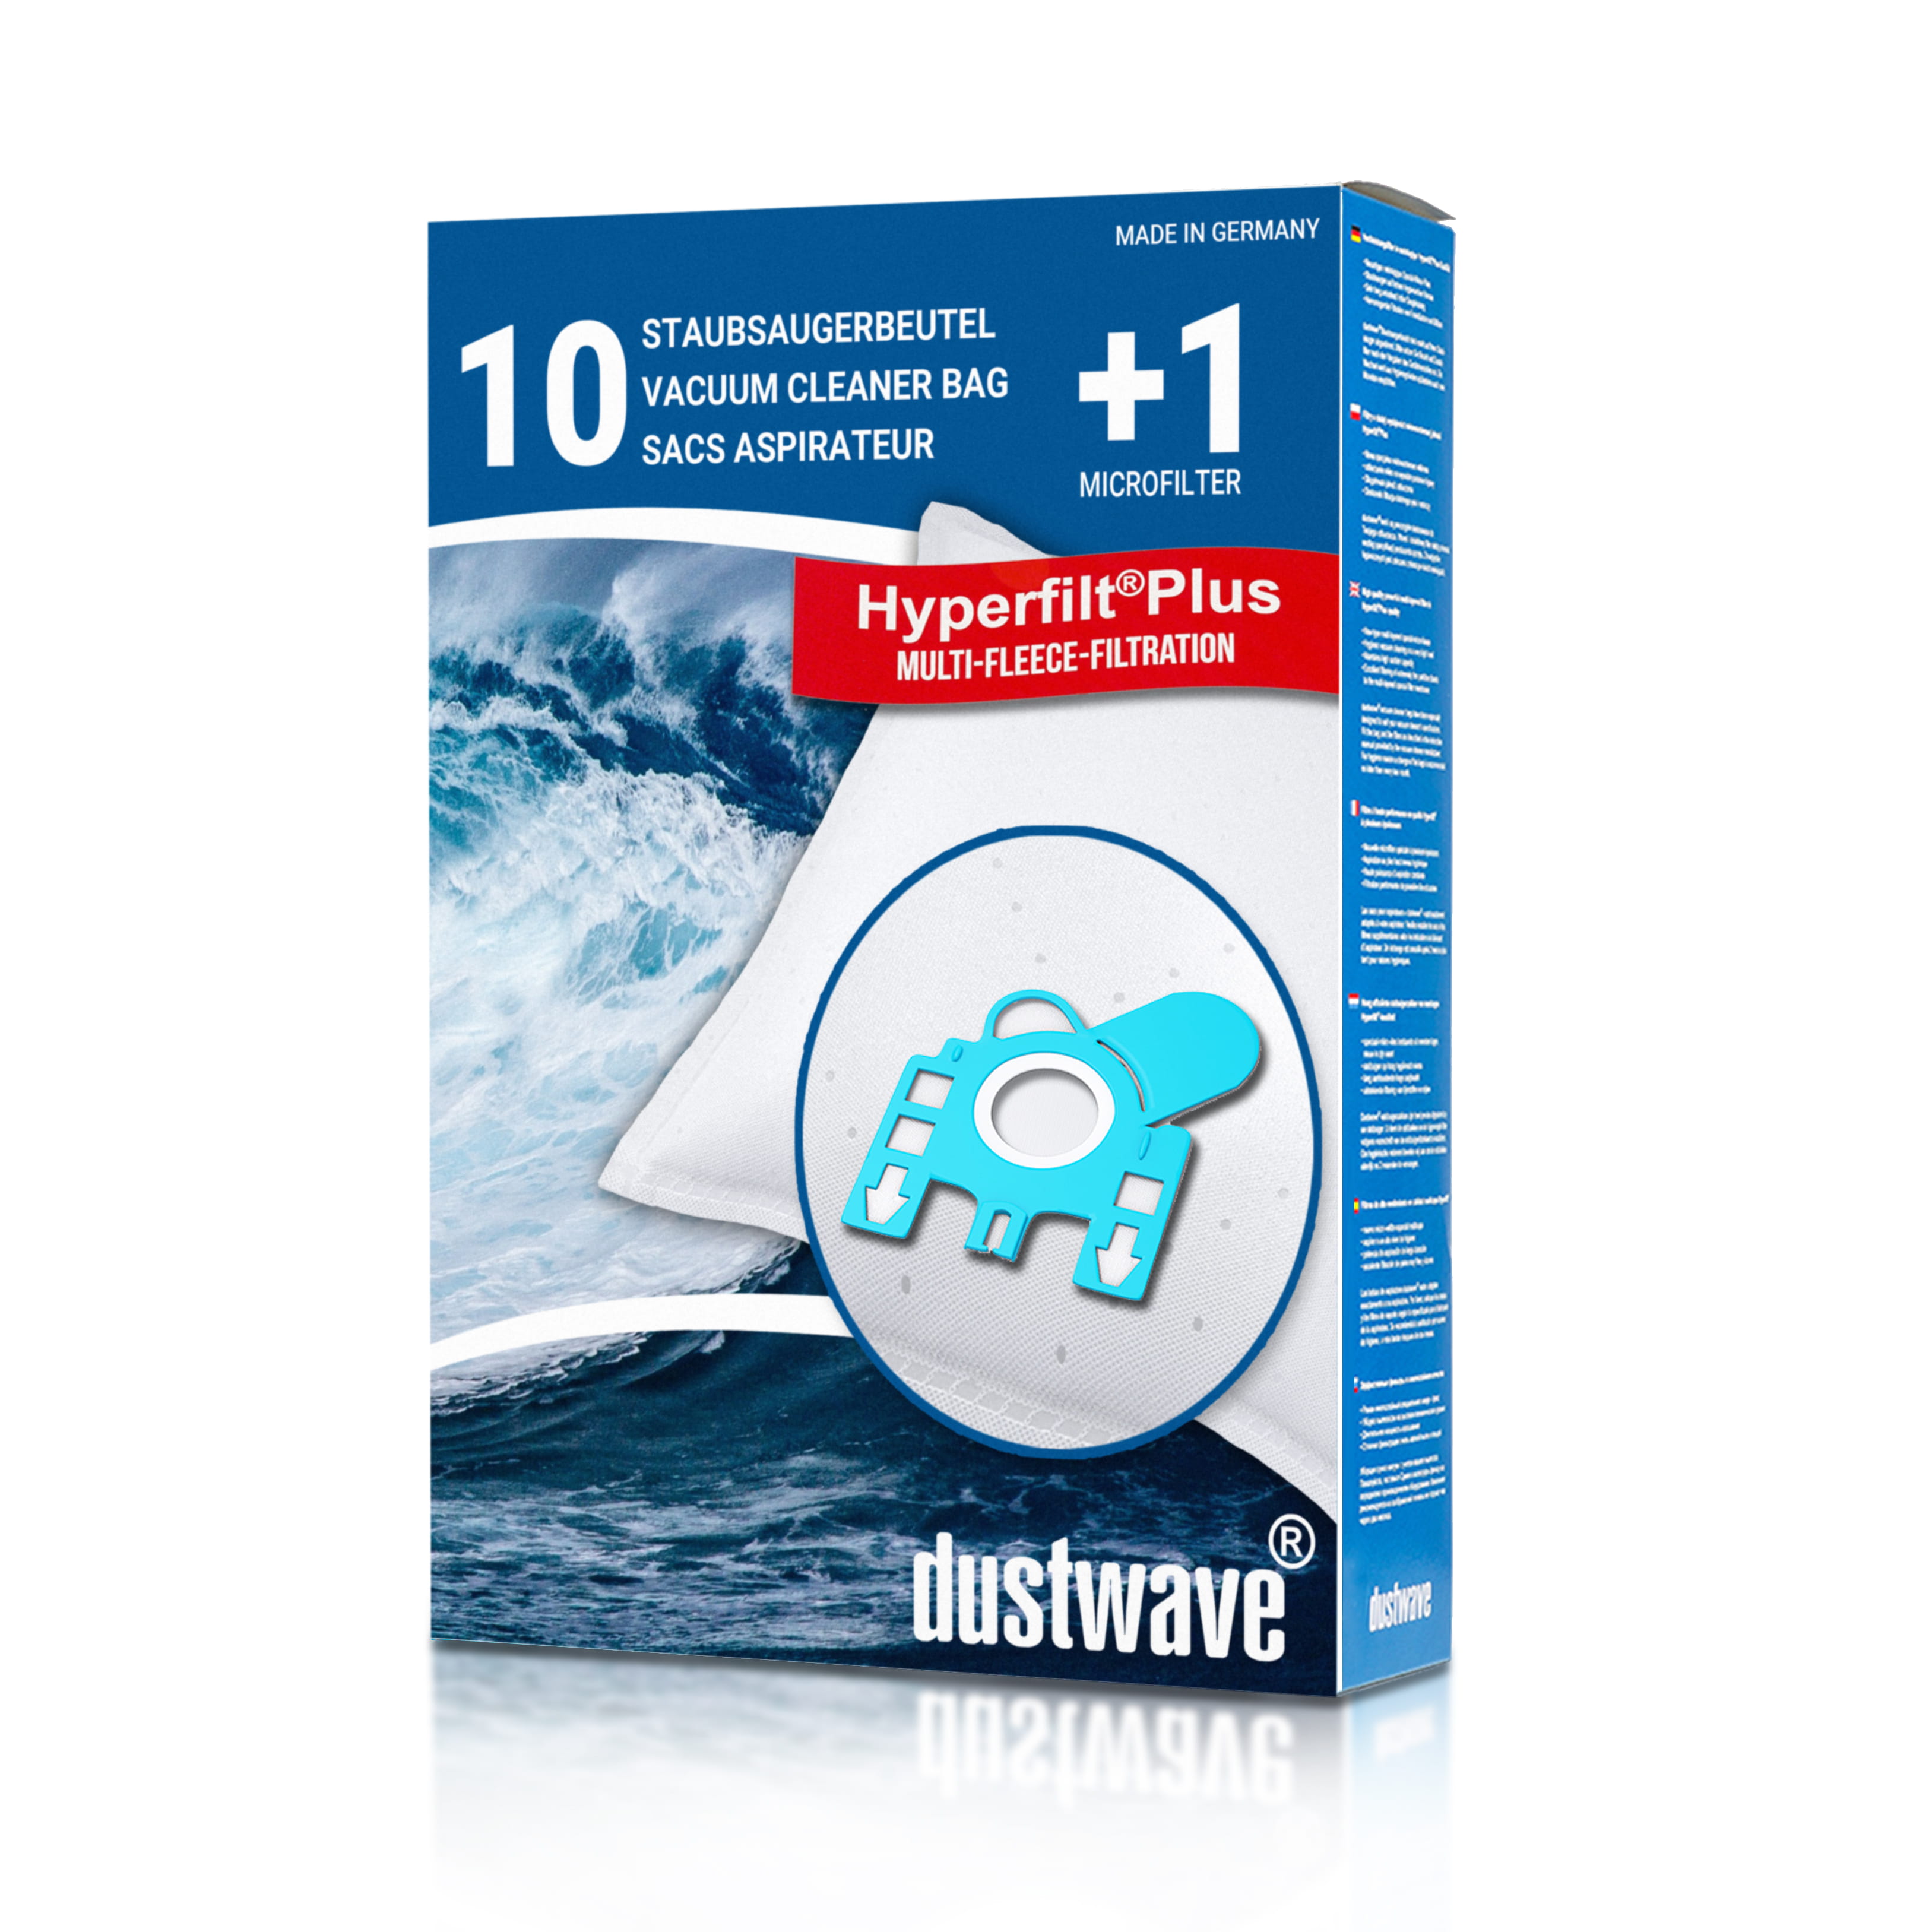 Dustwave® 10 Staubsaugerbeutel für Hoover S3600 - hocheffizient, mehrlagiges Mikrovlies mit Hygieneverschluss - Made in Germany